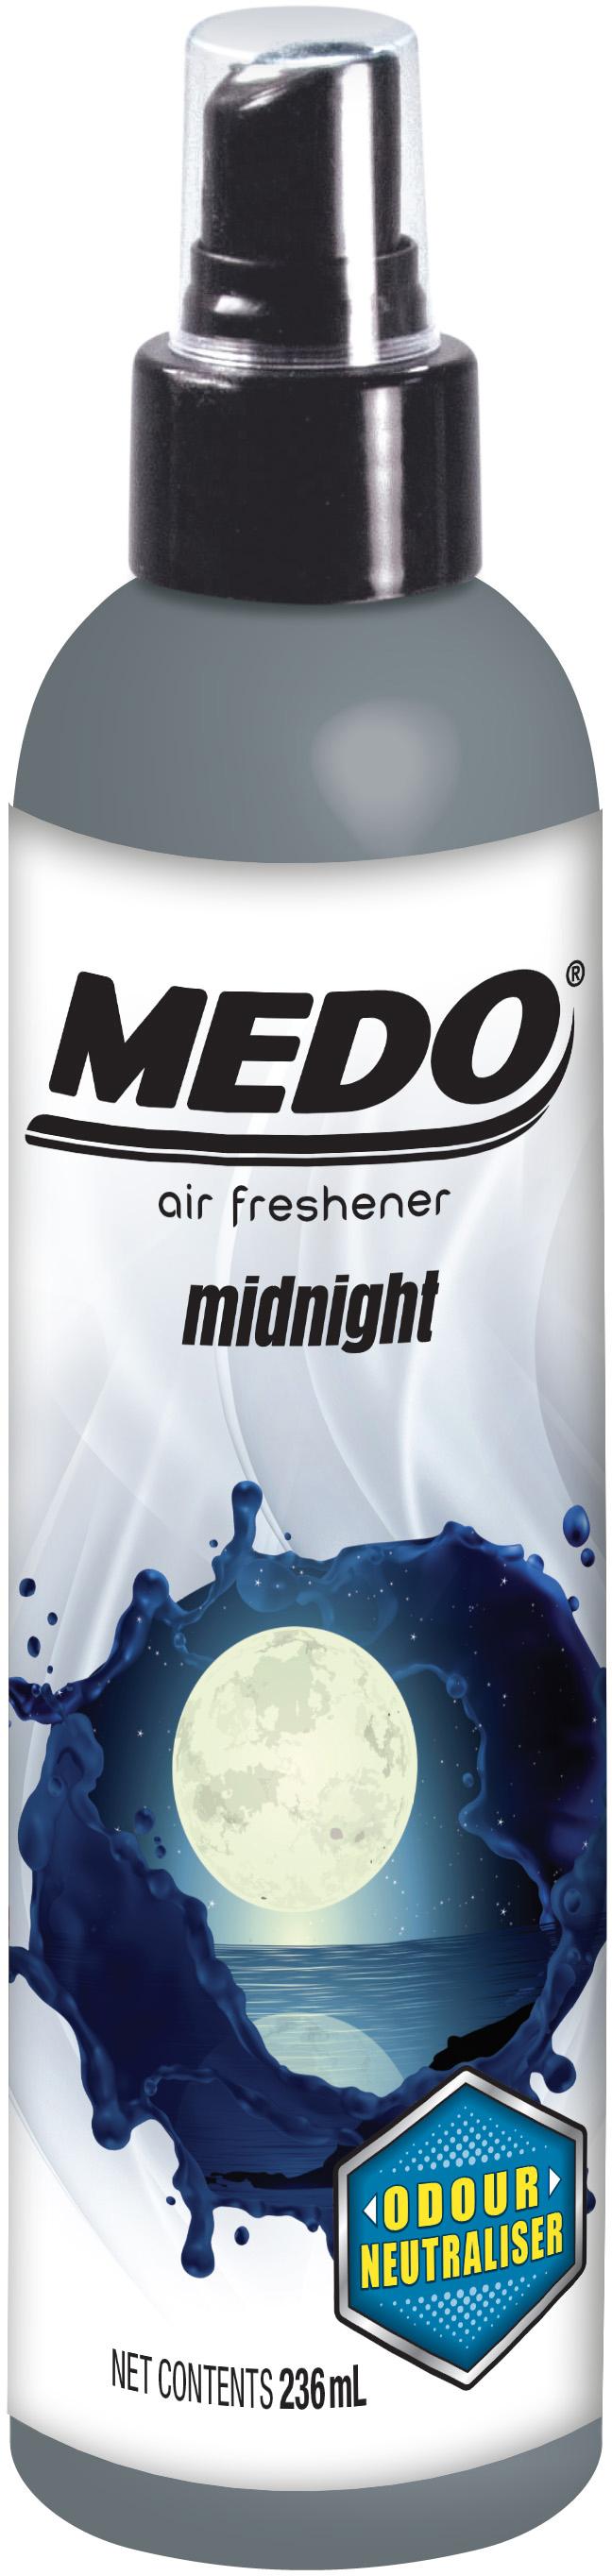 Medo Pump Spray Midnight Air Freshener